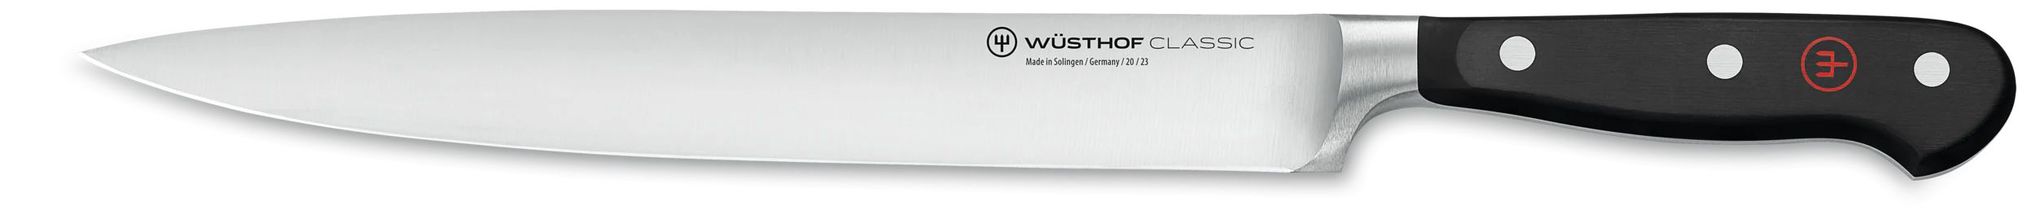 Wusthof Fleischmesser Classic 23 cm